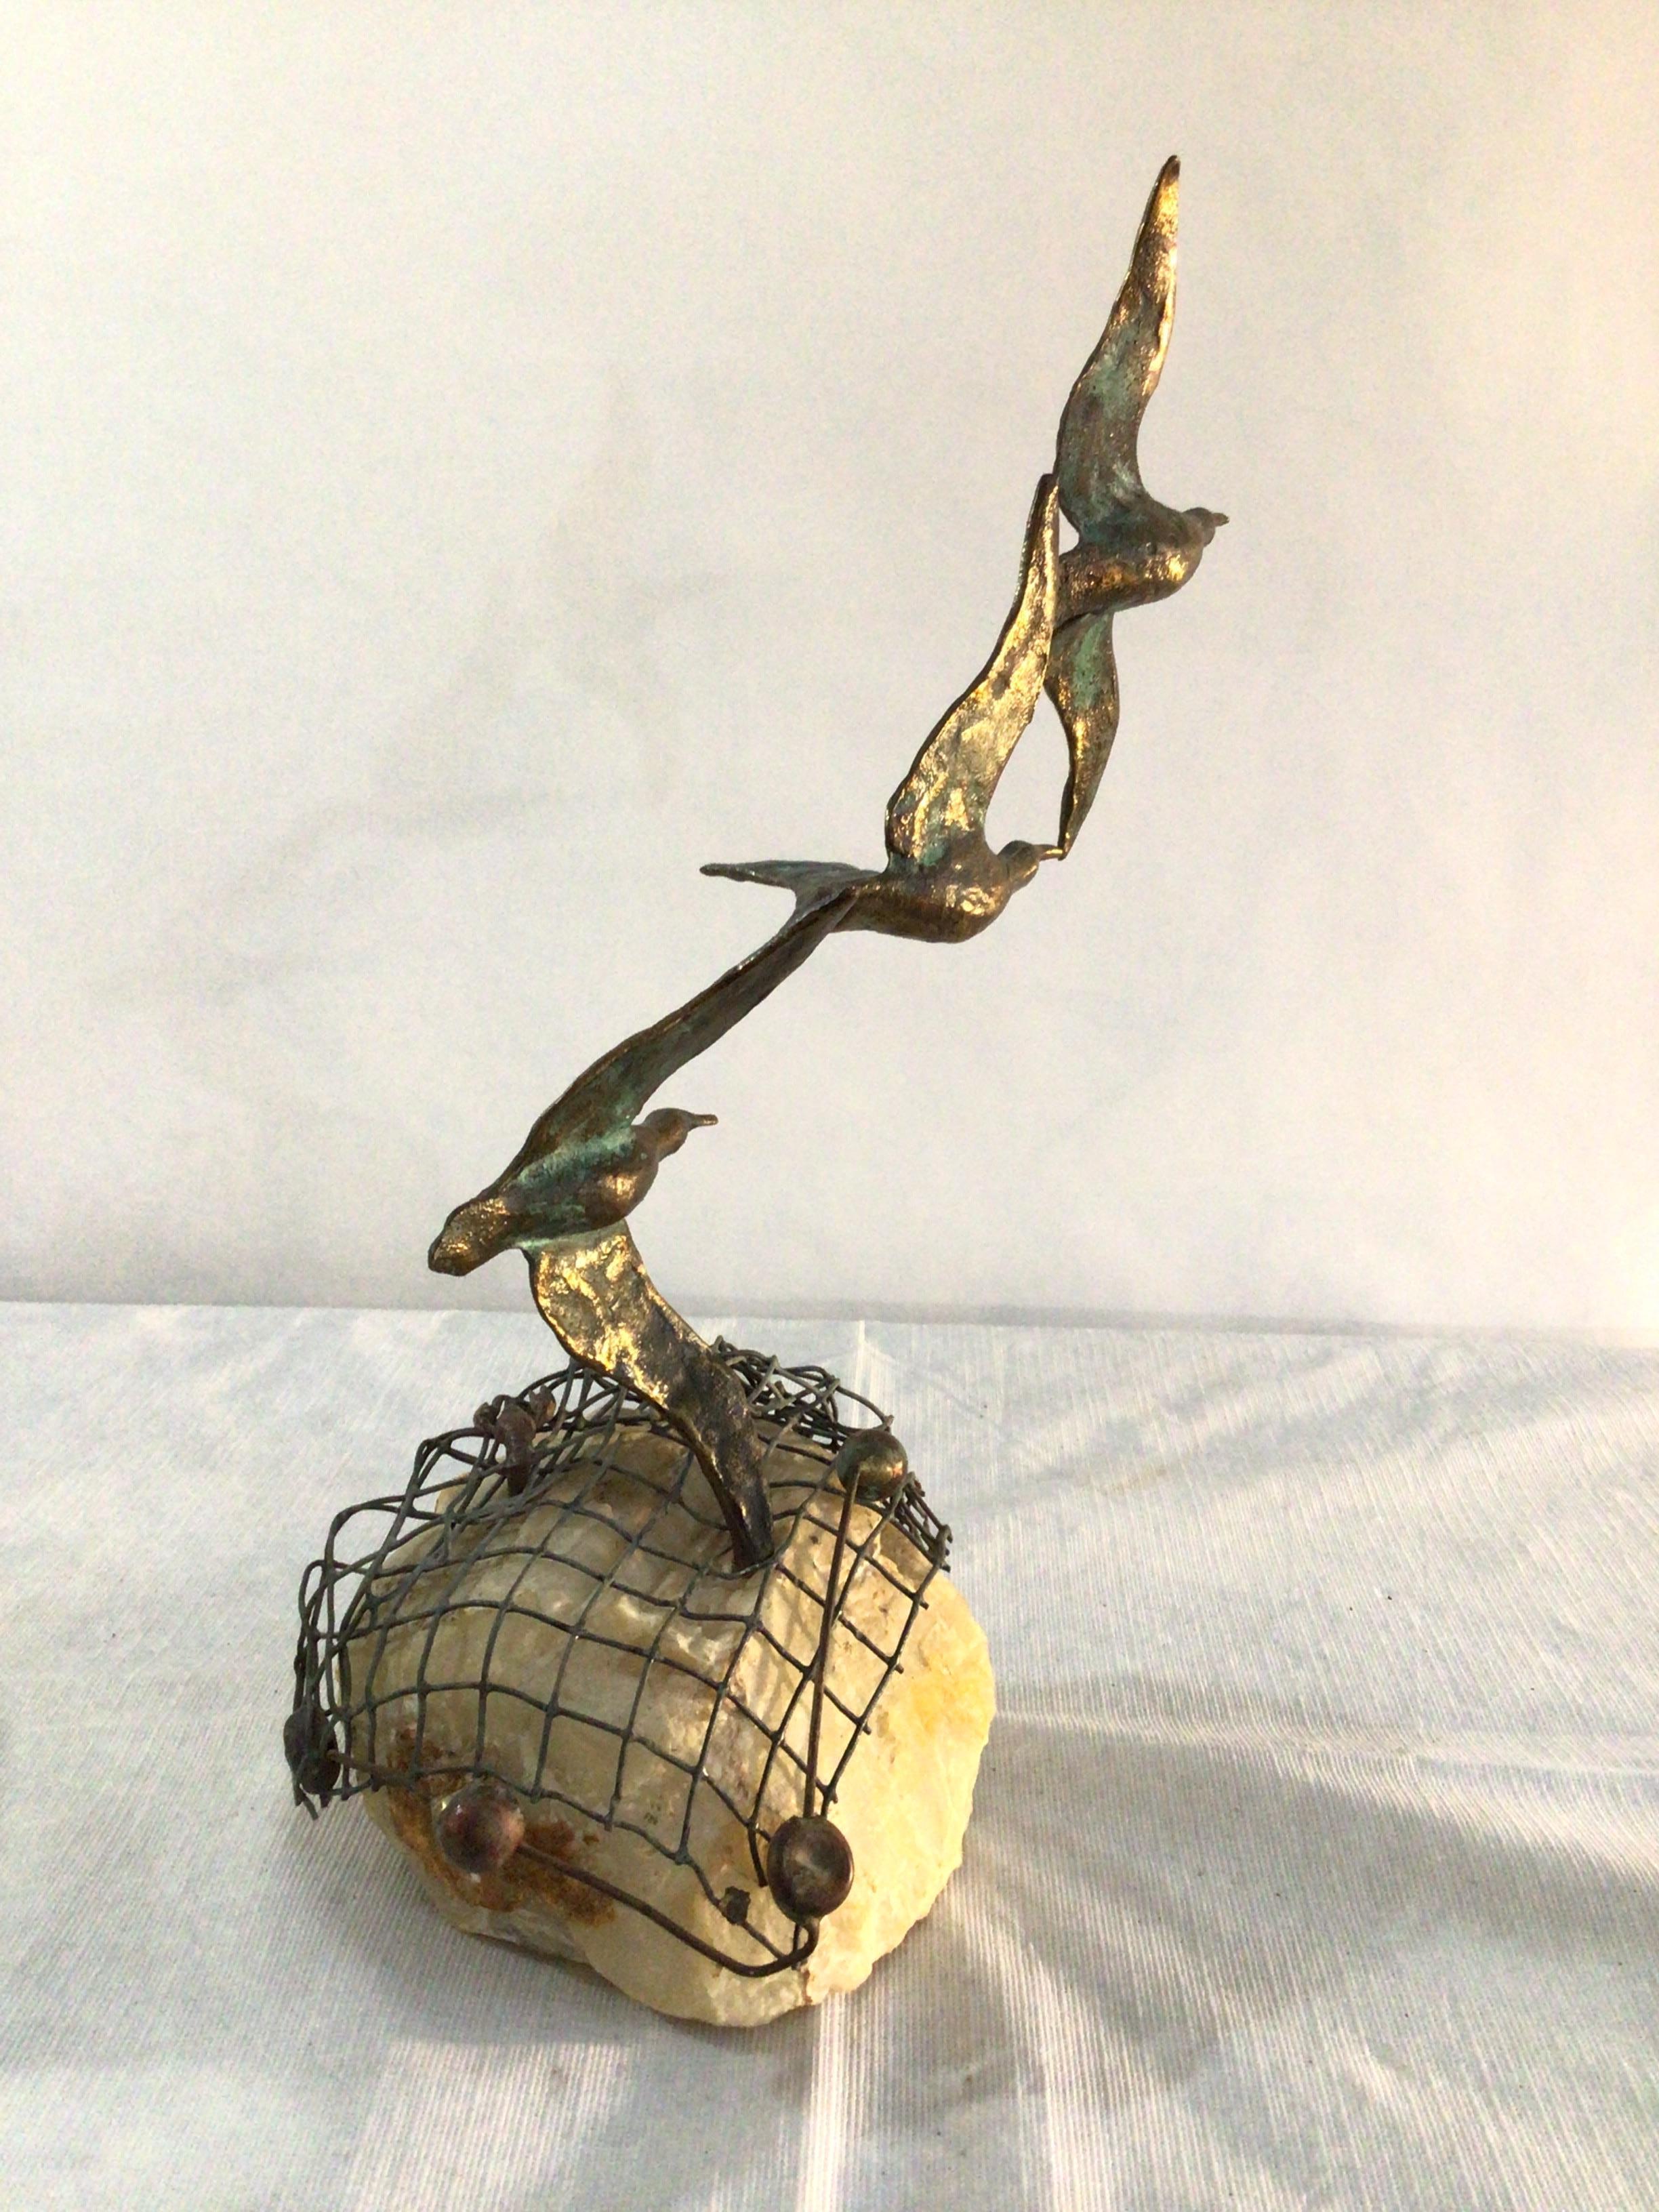 1960s Curtis Jere 3 Birds In Flight Sculpture On Stone Base with Label
Homard présenté sur un filet métallique qui complète la sculpture nautique